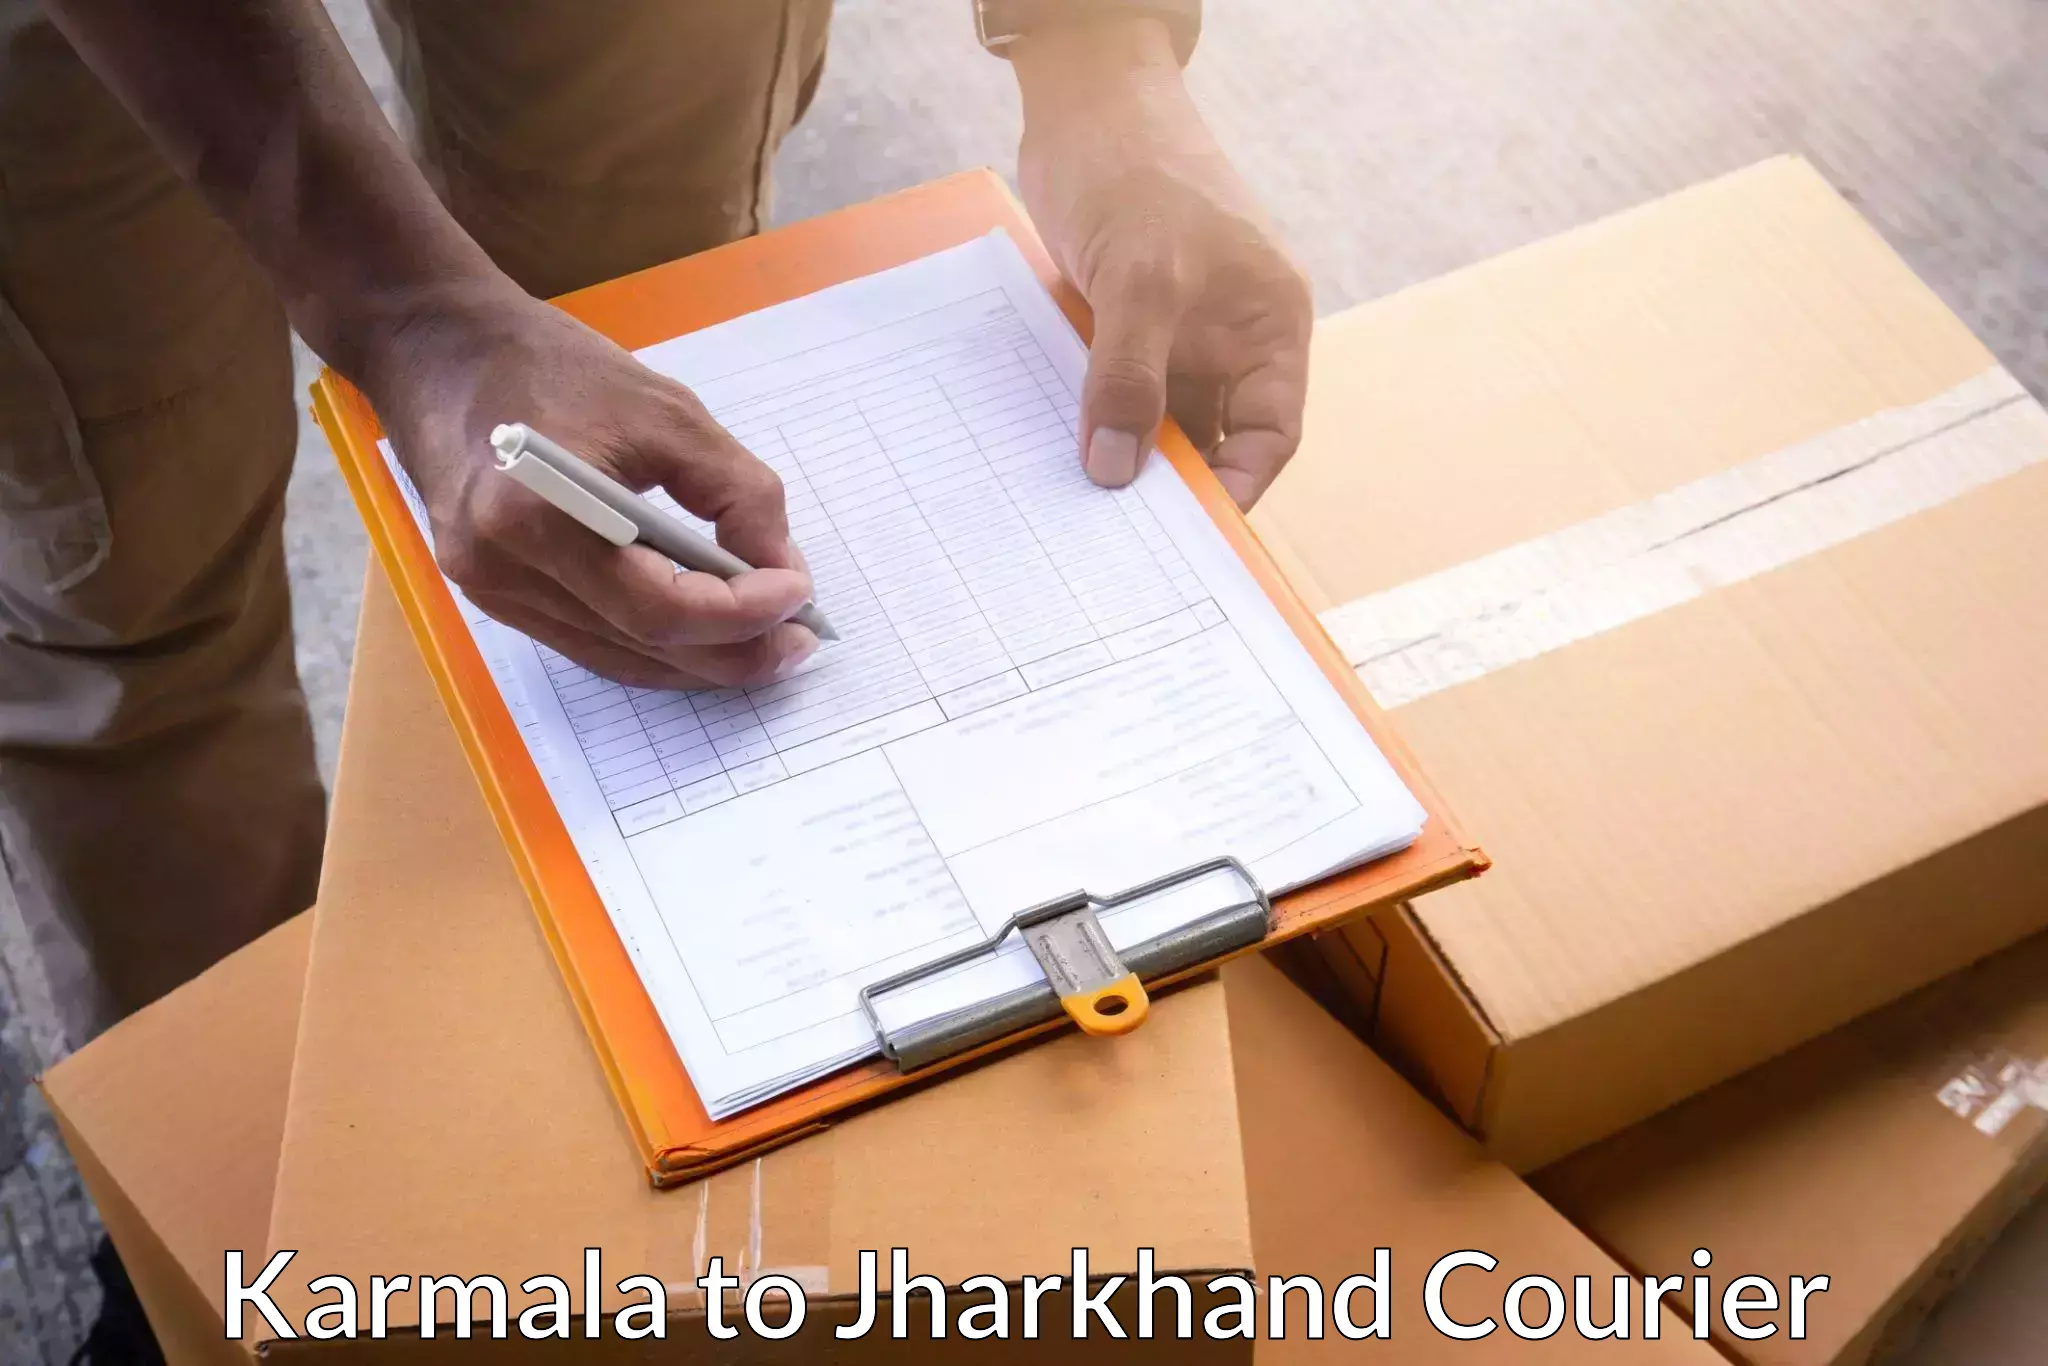 Reliable delivery network Karmala to Chandankiyari